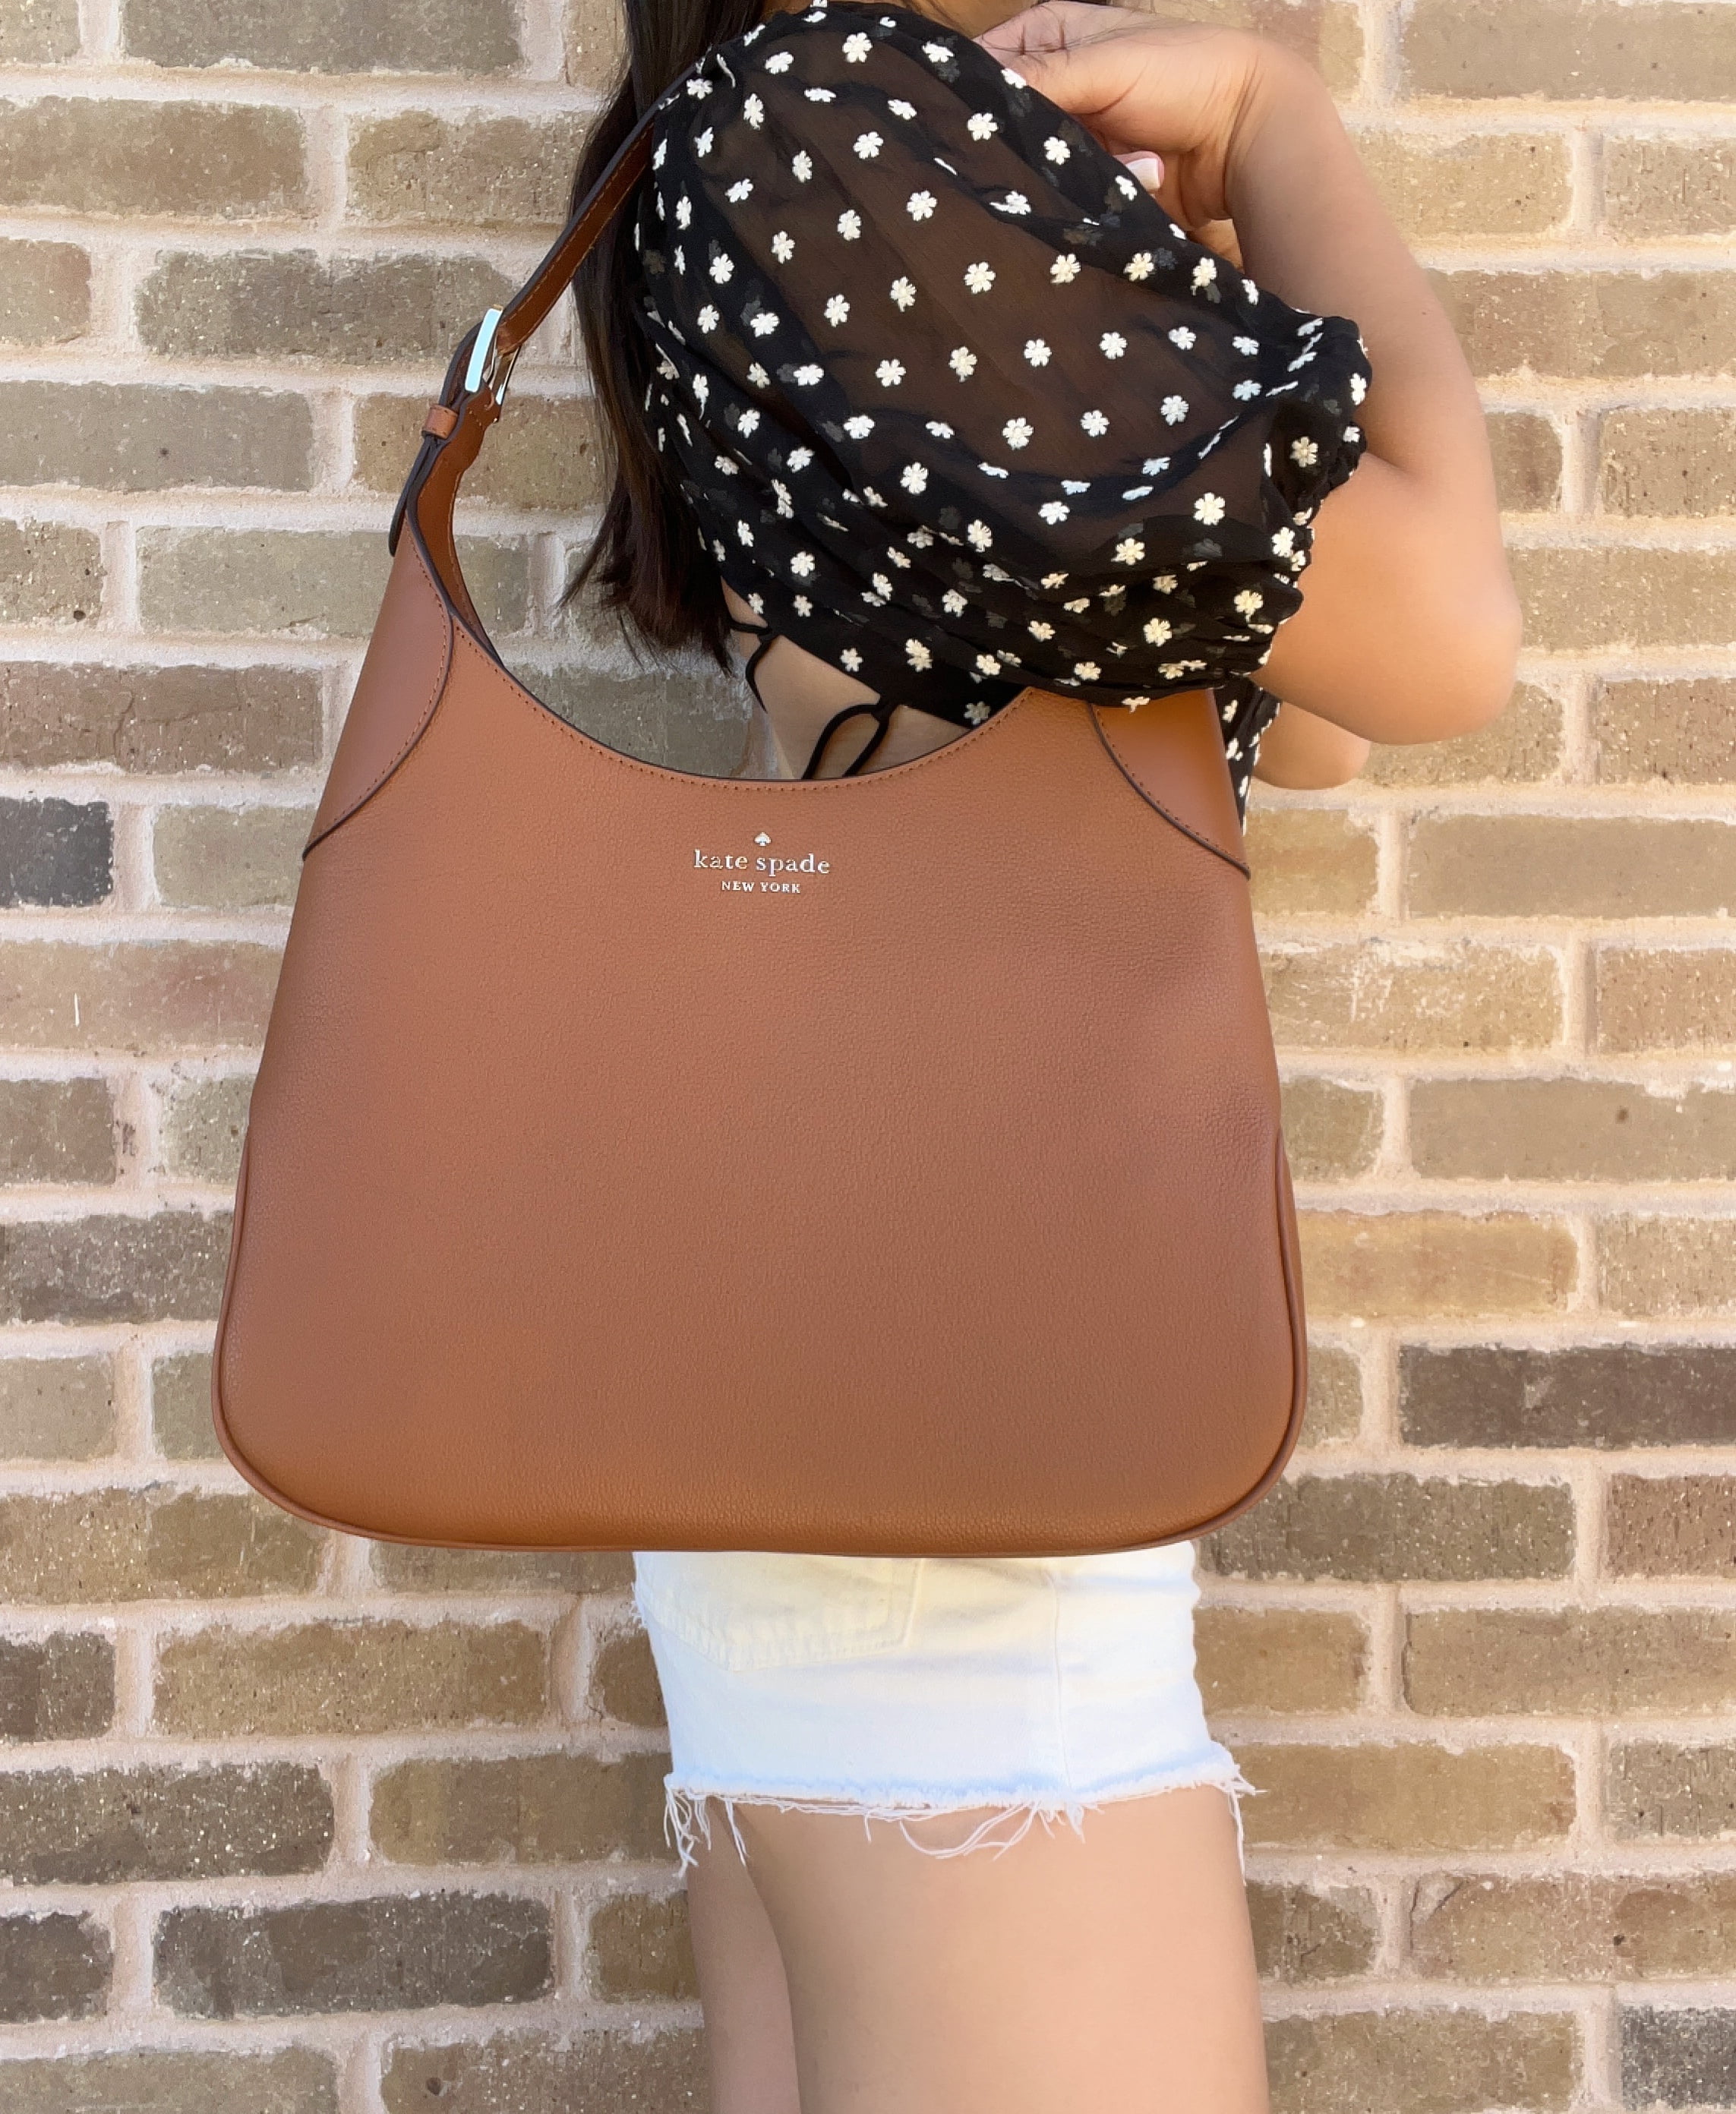 Kate Spade Aster Brown Leather Shoulder Bag WKR00567 Warm Gingerbread -  